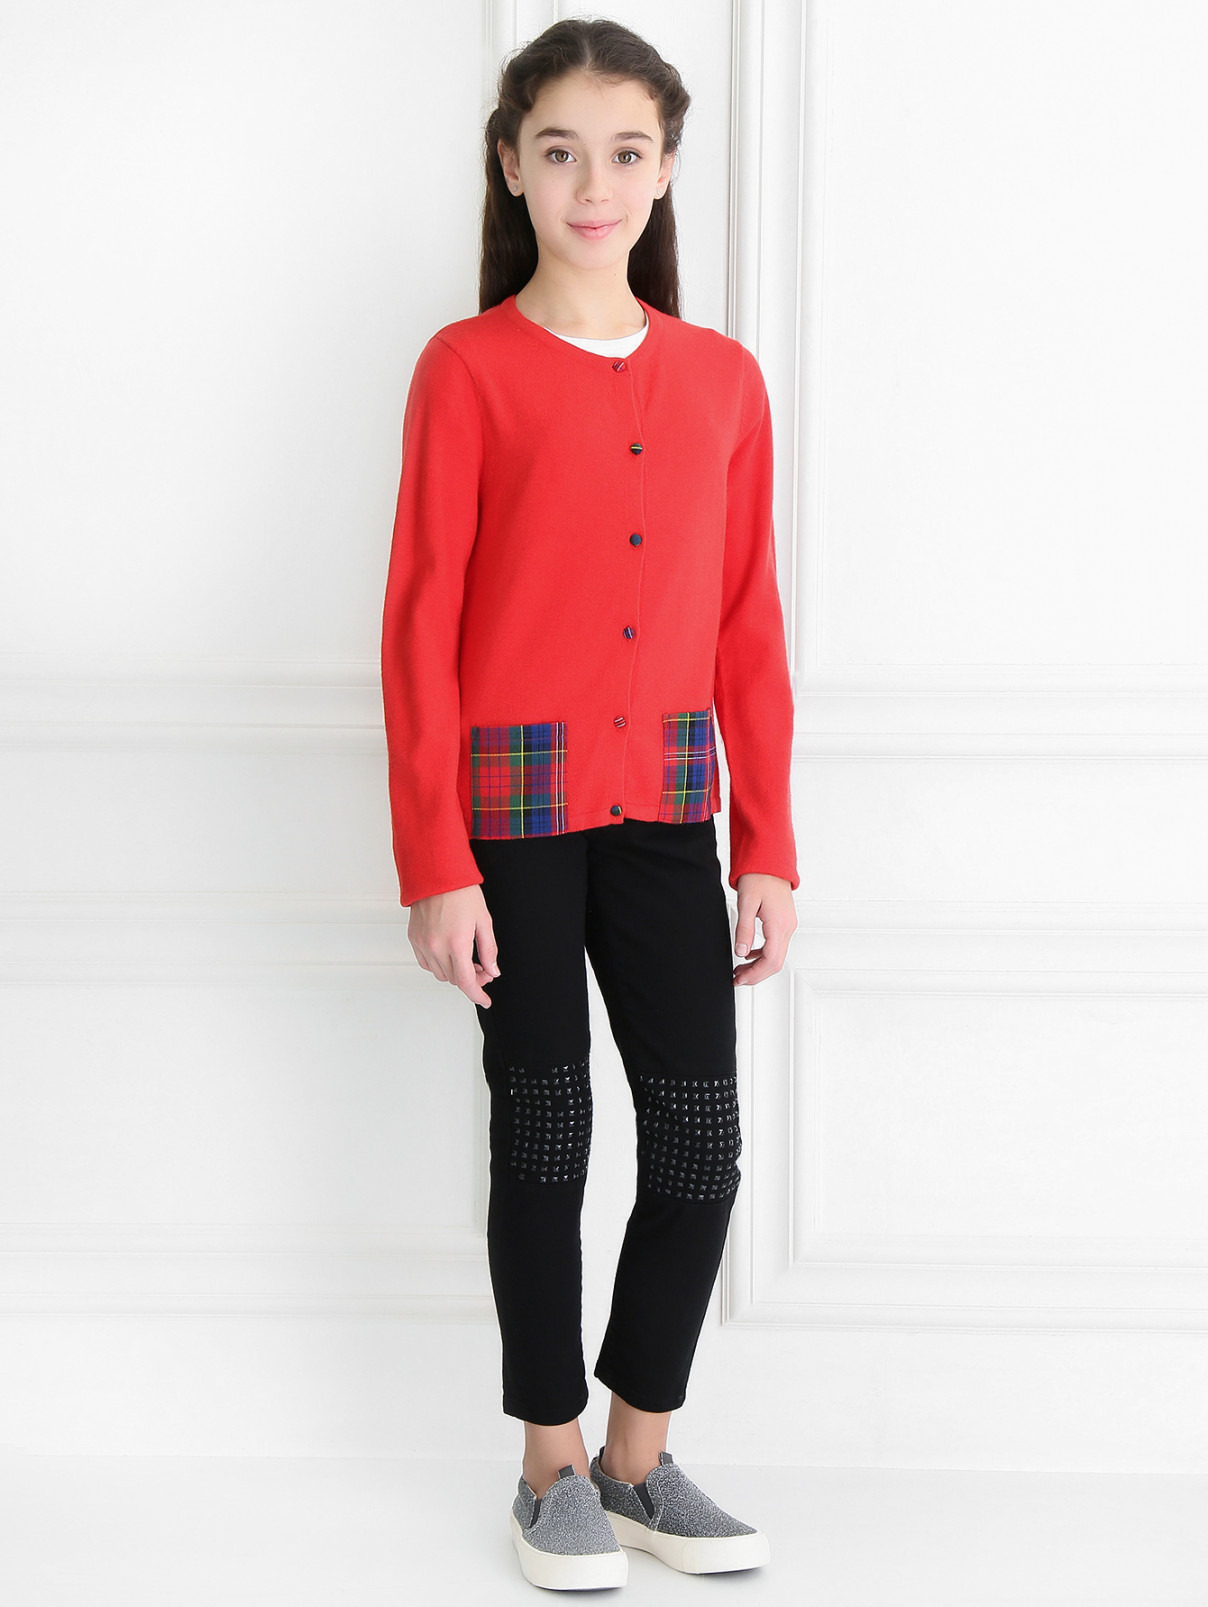 Кардиган мелкой вязки с карманами Junior Gaultier  –  Модель Общий вид  – Цвет:  Красный